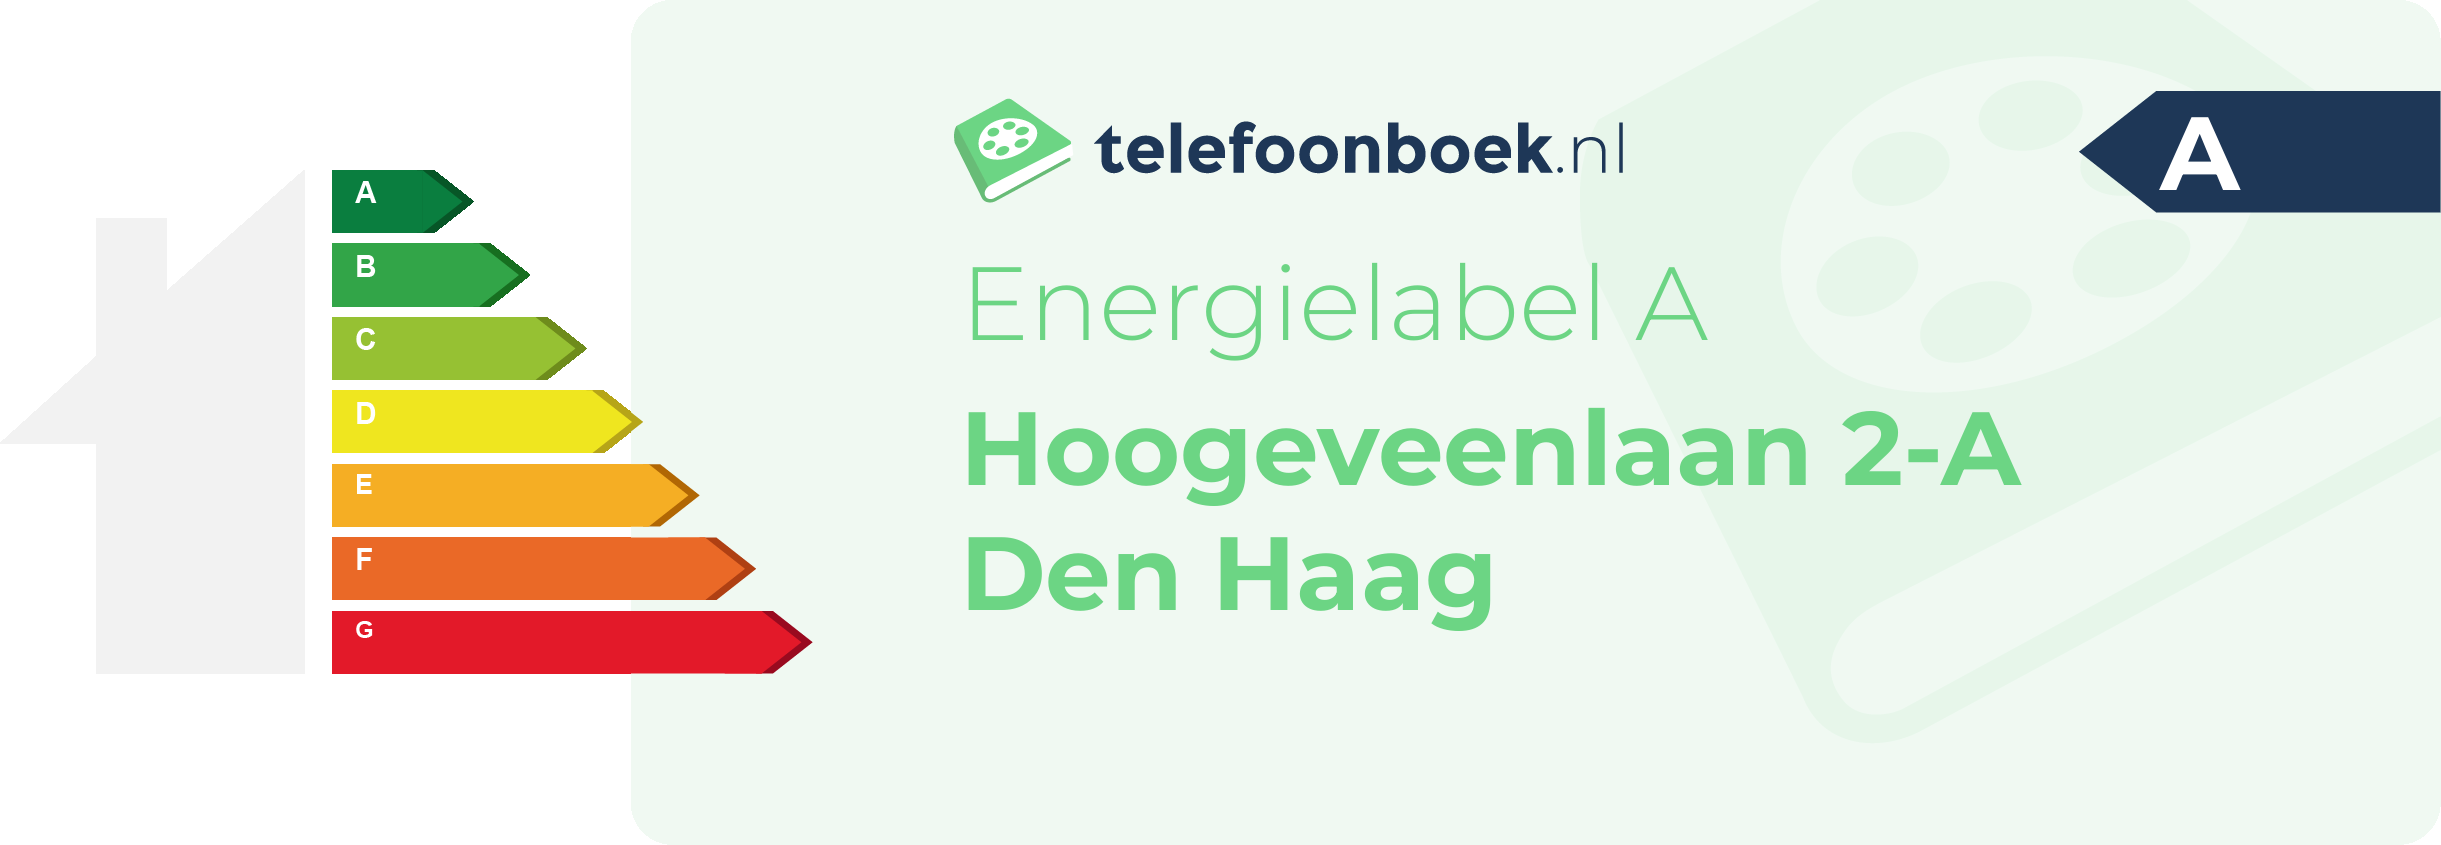 Energielabel Hoogeveenlaan 2-A Den Haag